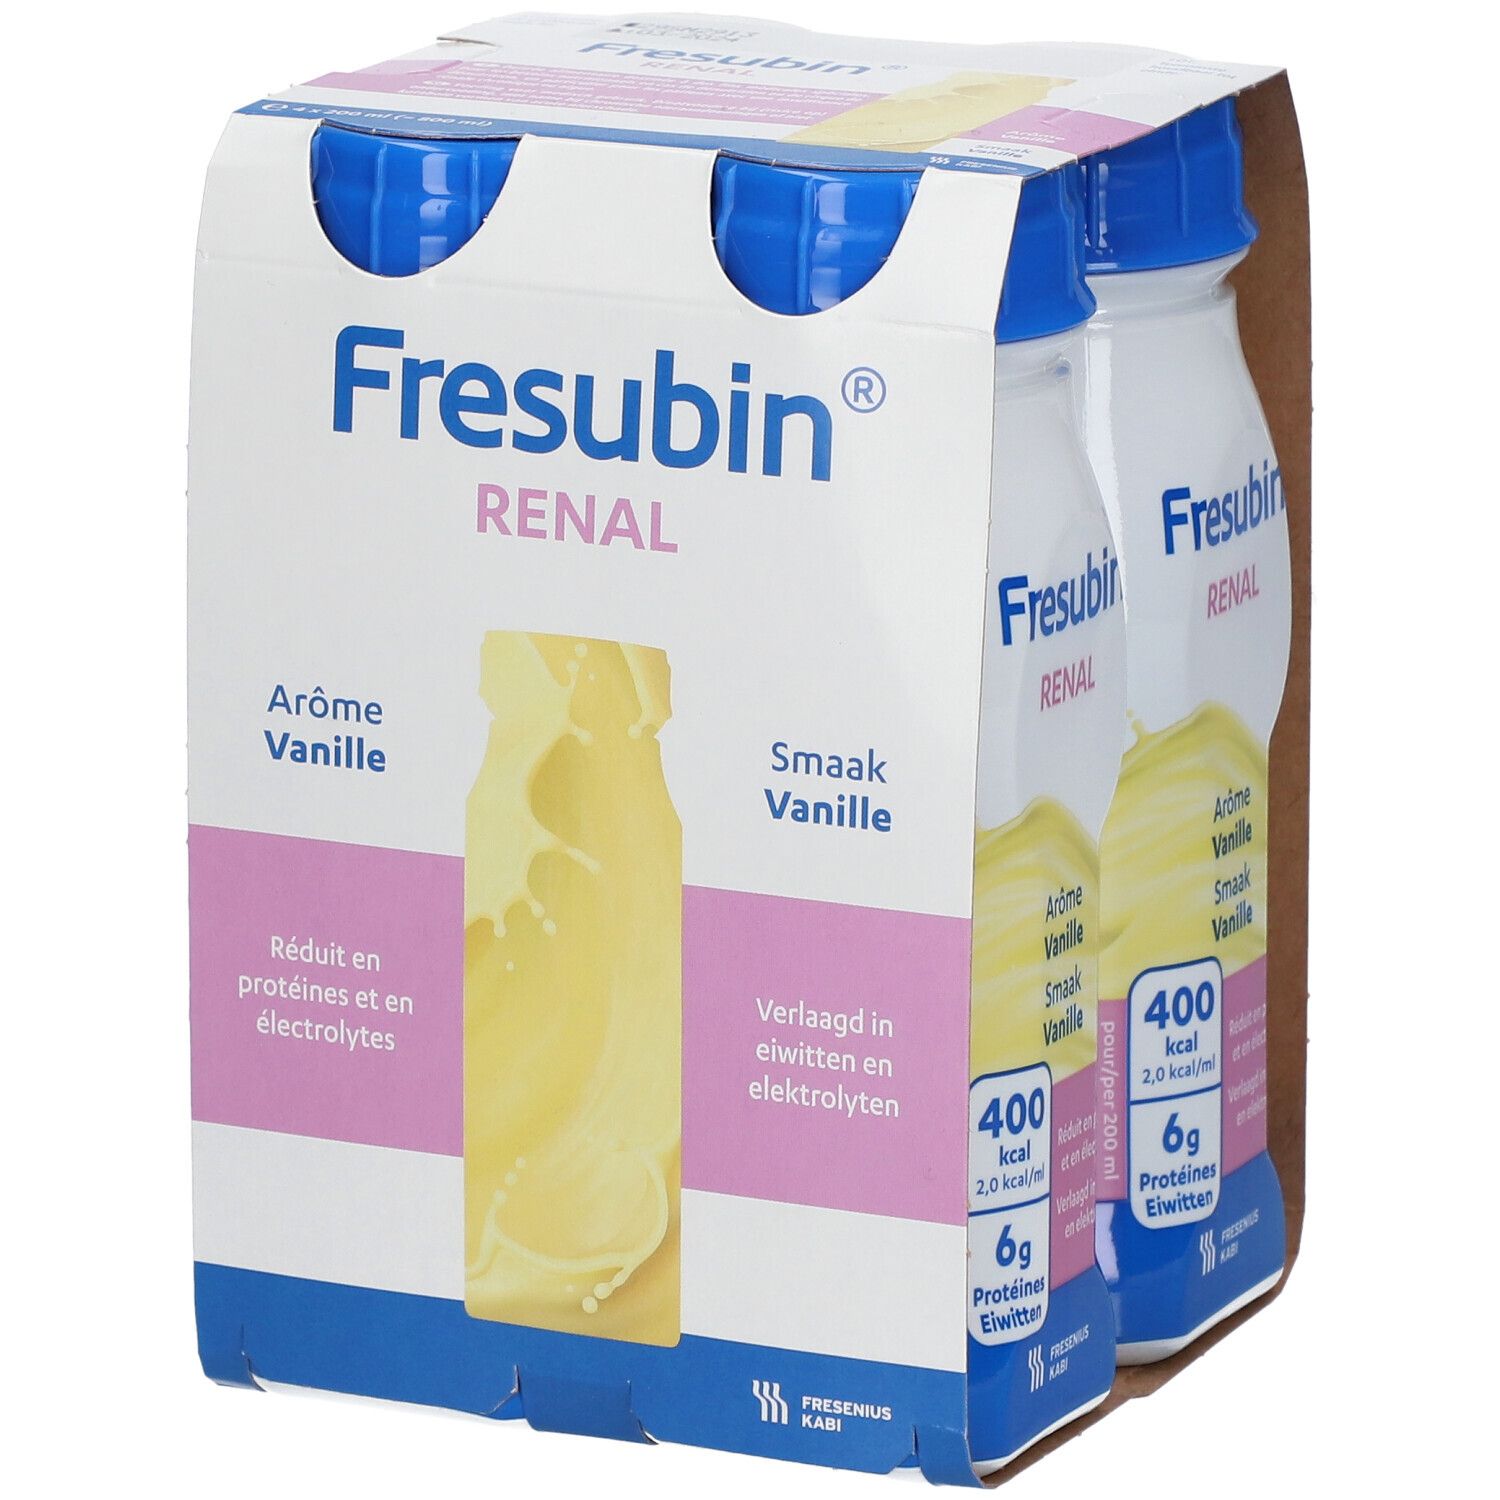 Fresubin Renal Drink